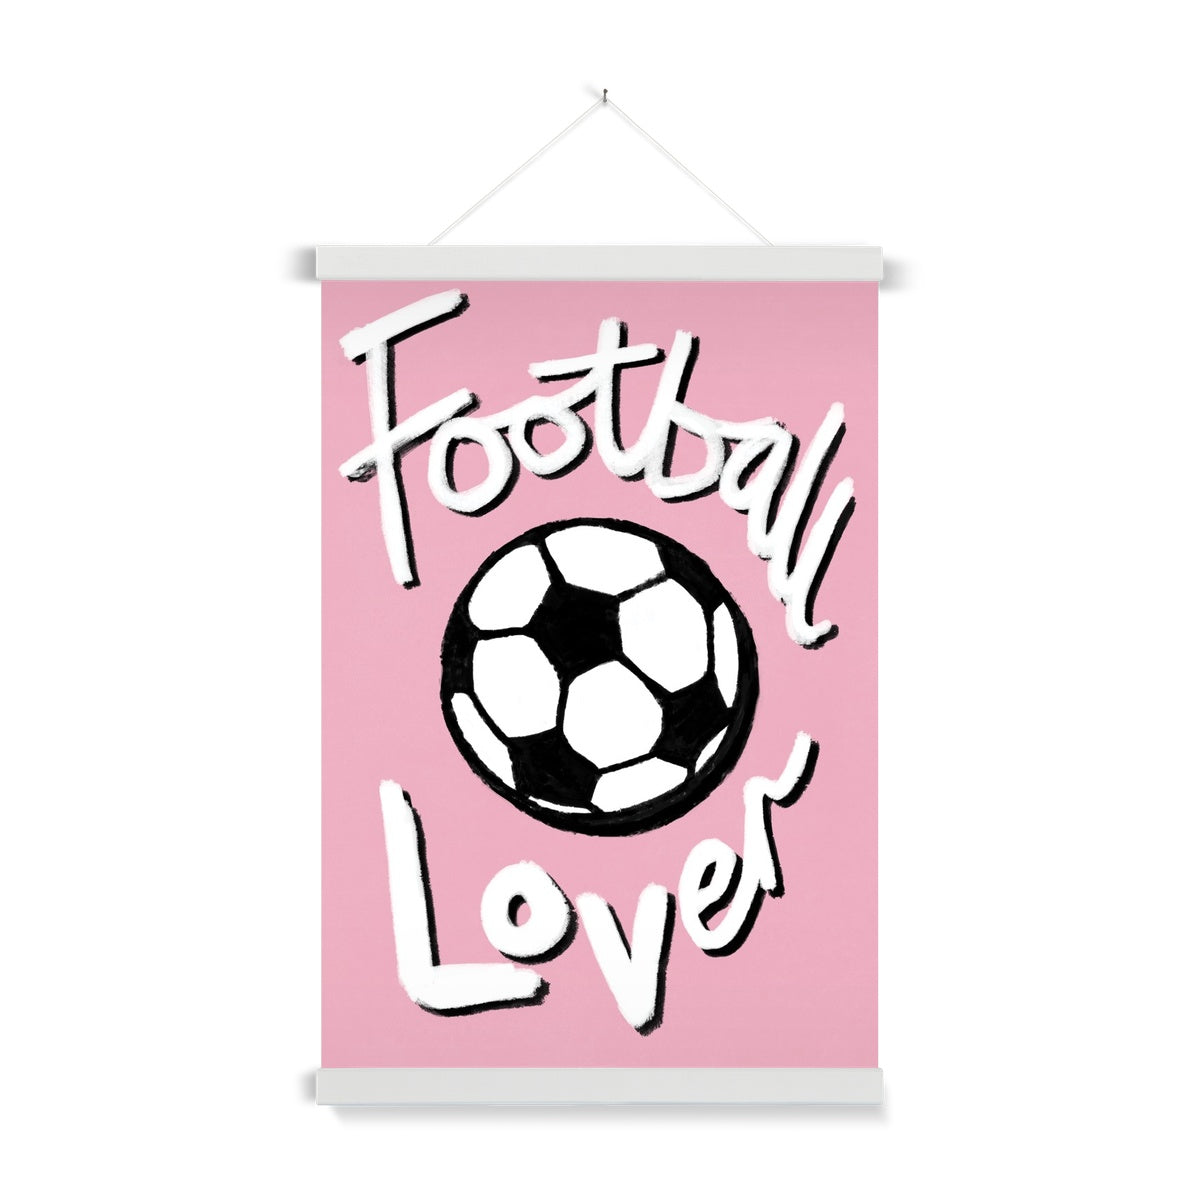 Football Lover Print - Light Pink, White, Black Fine Art Print with Hanger